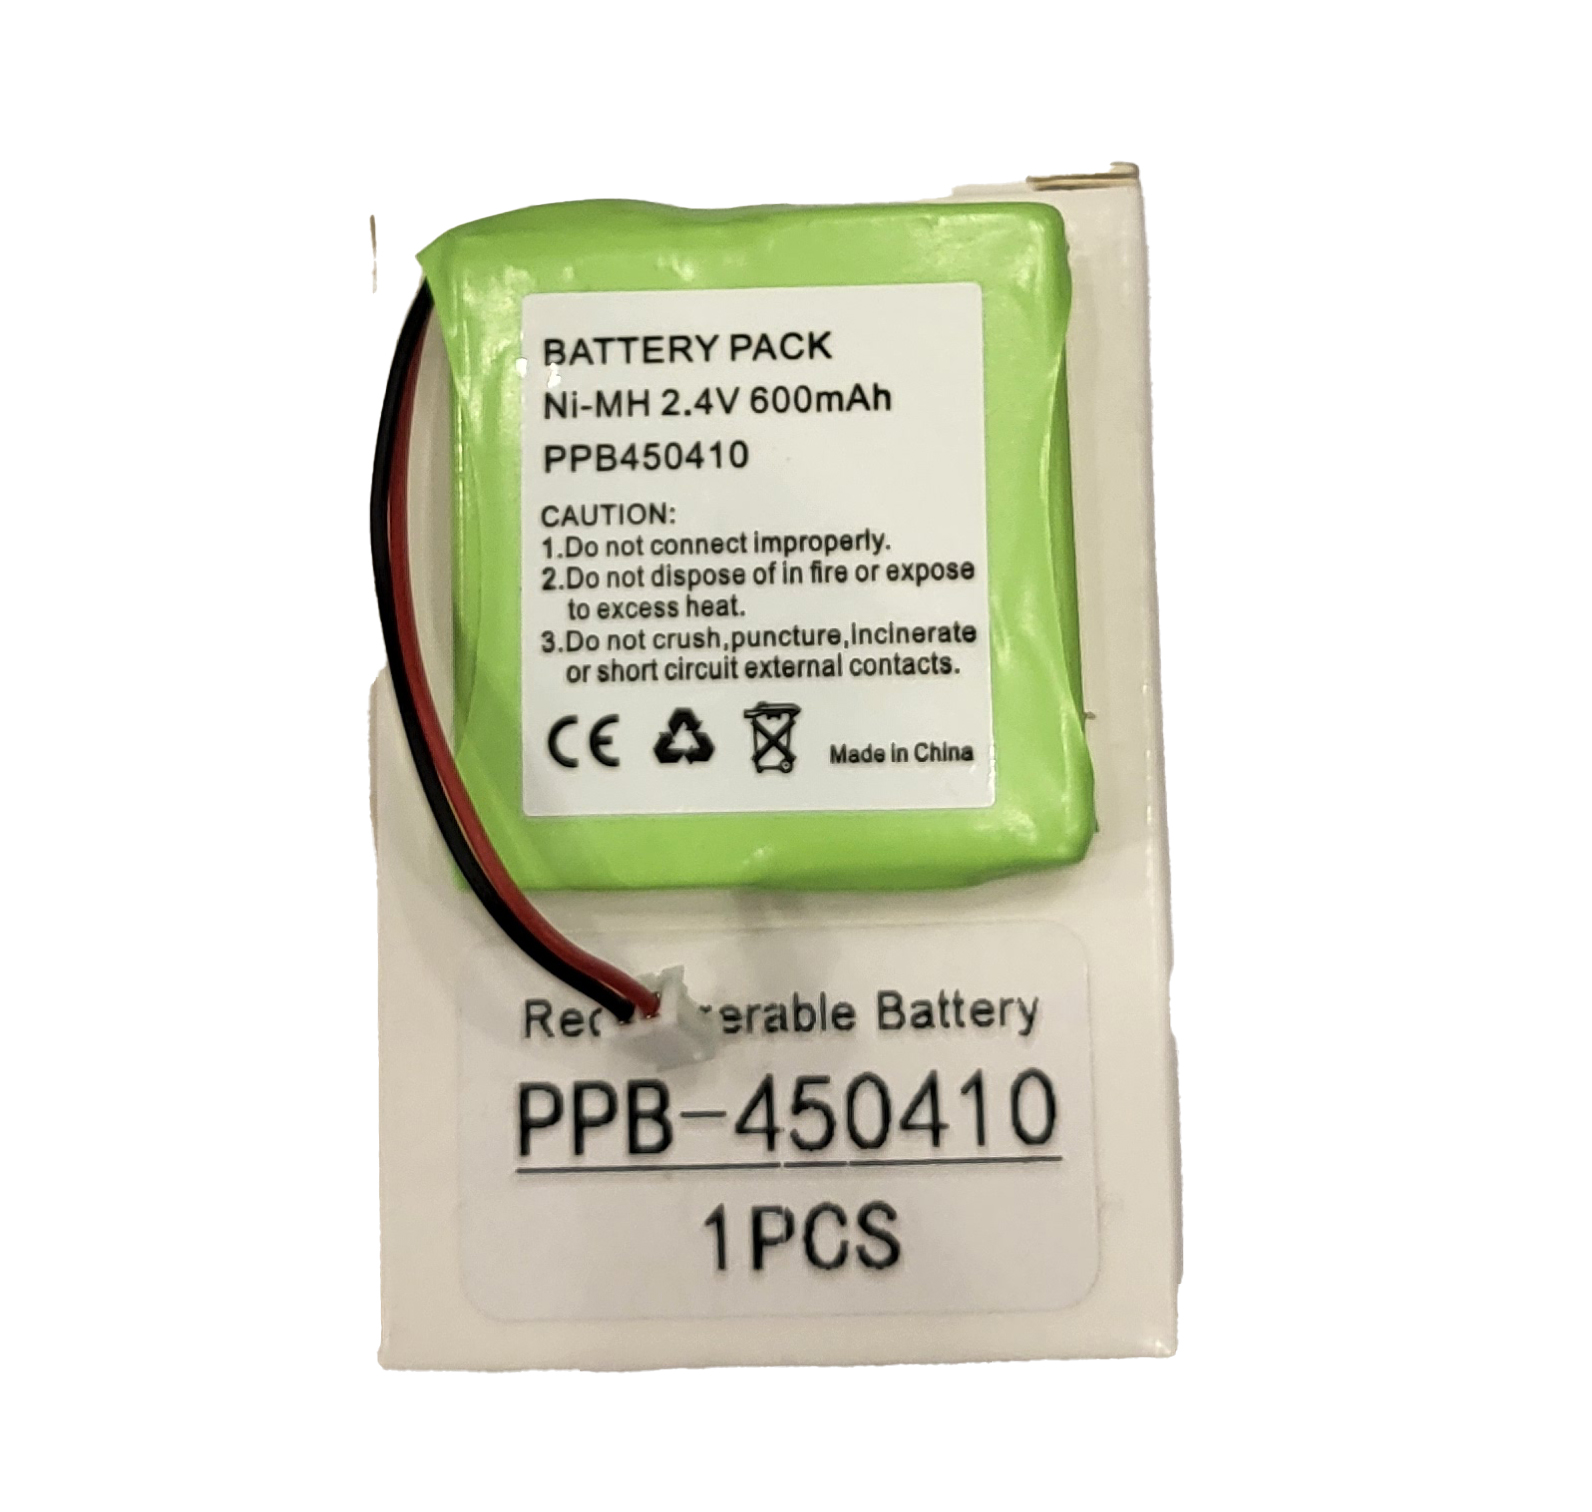 باتری تلفن بیسیم F6 مکسس مدل ppb450410